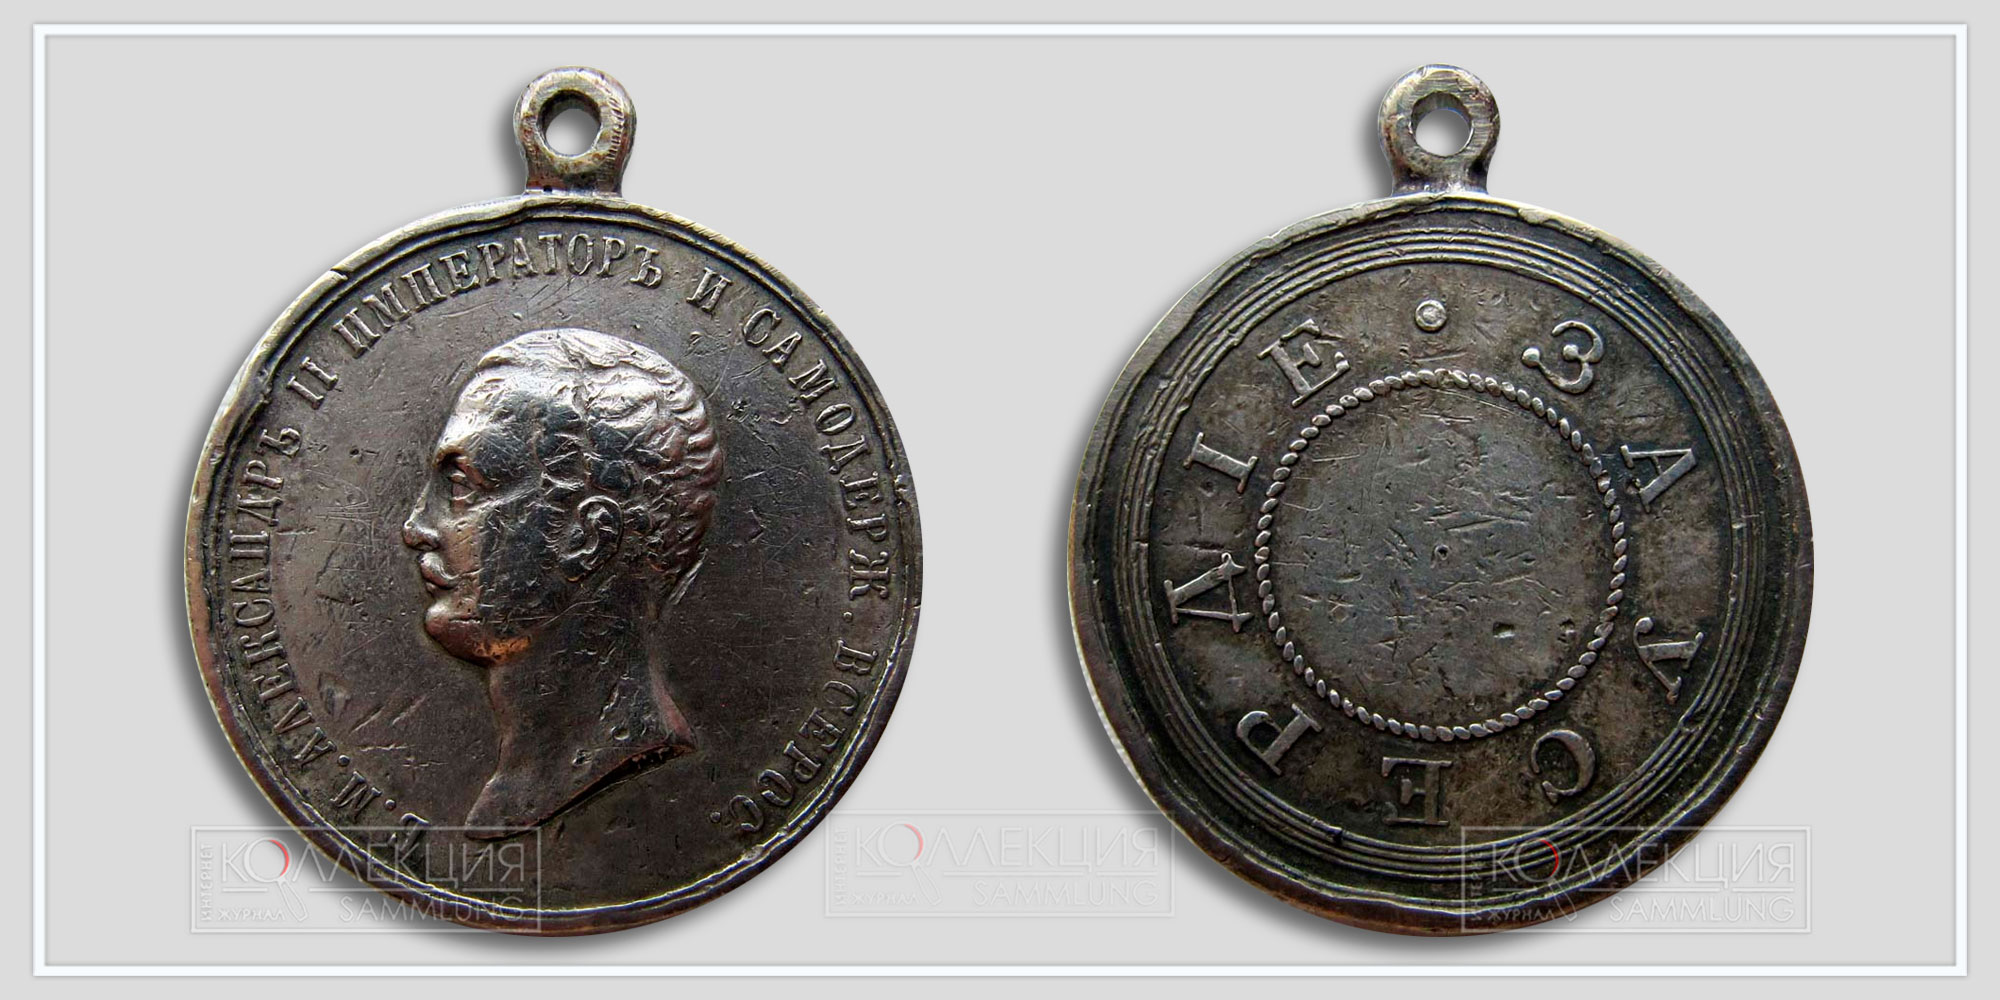 Медаль «За усердие» Александр II. Диаметр 28,5 мм. Вес 13.1 г. В обрезе плеча - инициалы мастера "РГ" (Роберт Геннеман). (Медаль любезно предоставил Бабаев Виктор г. Кемерово)